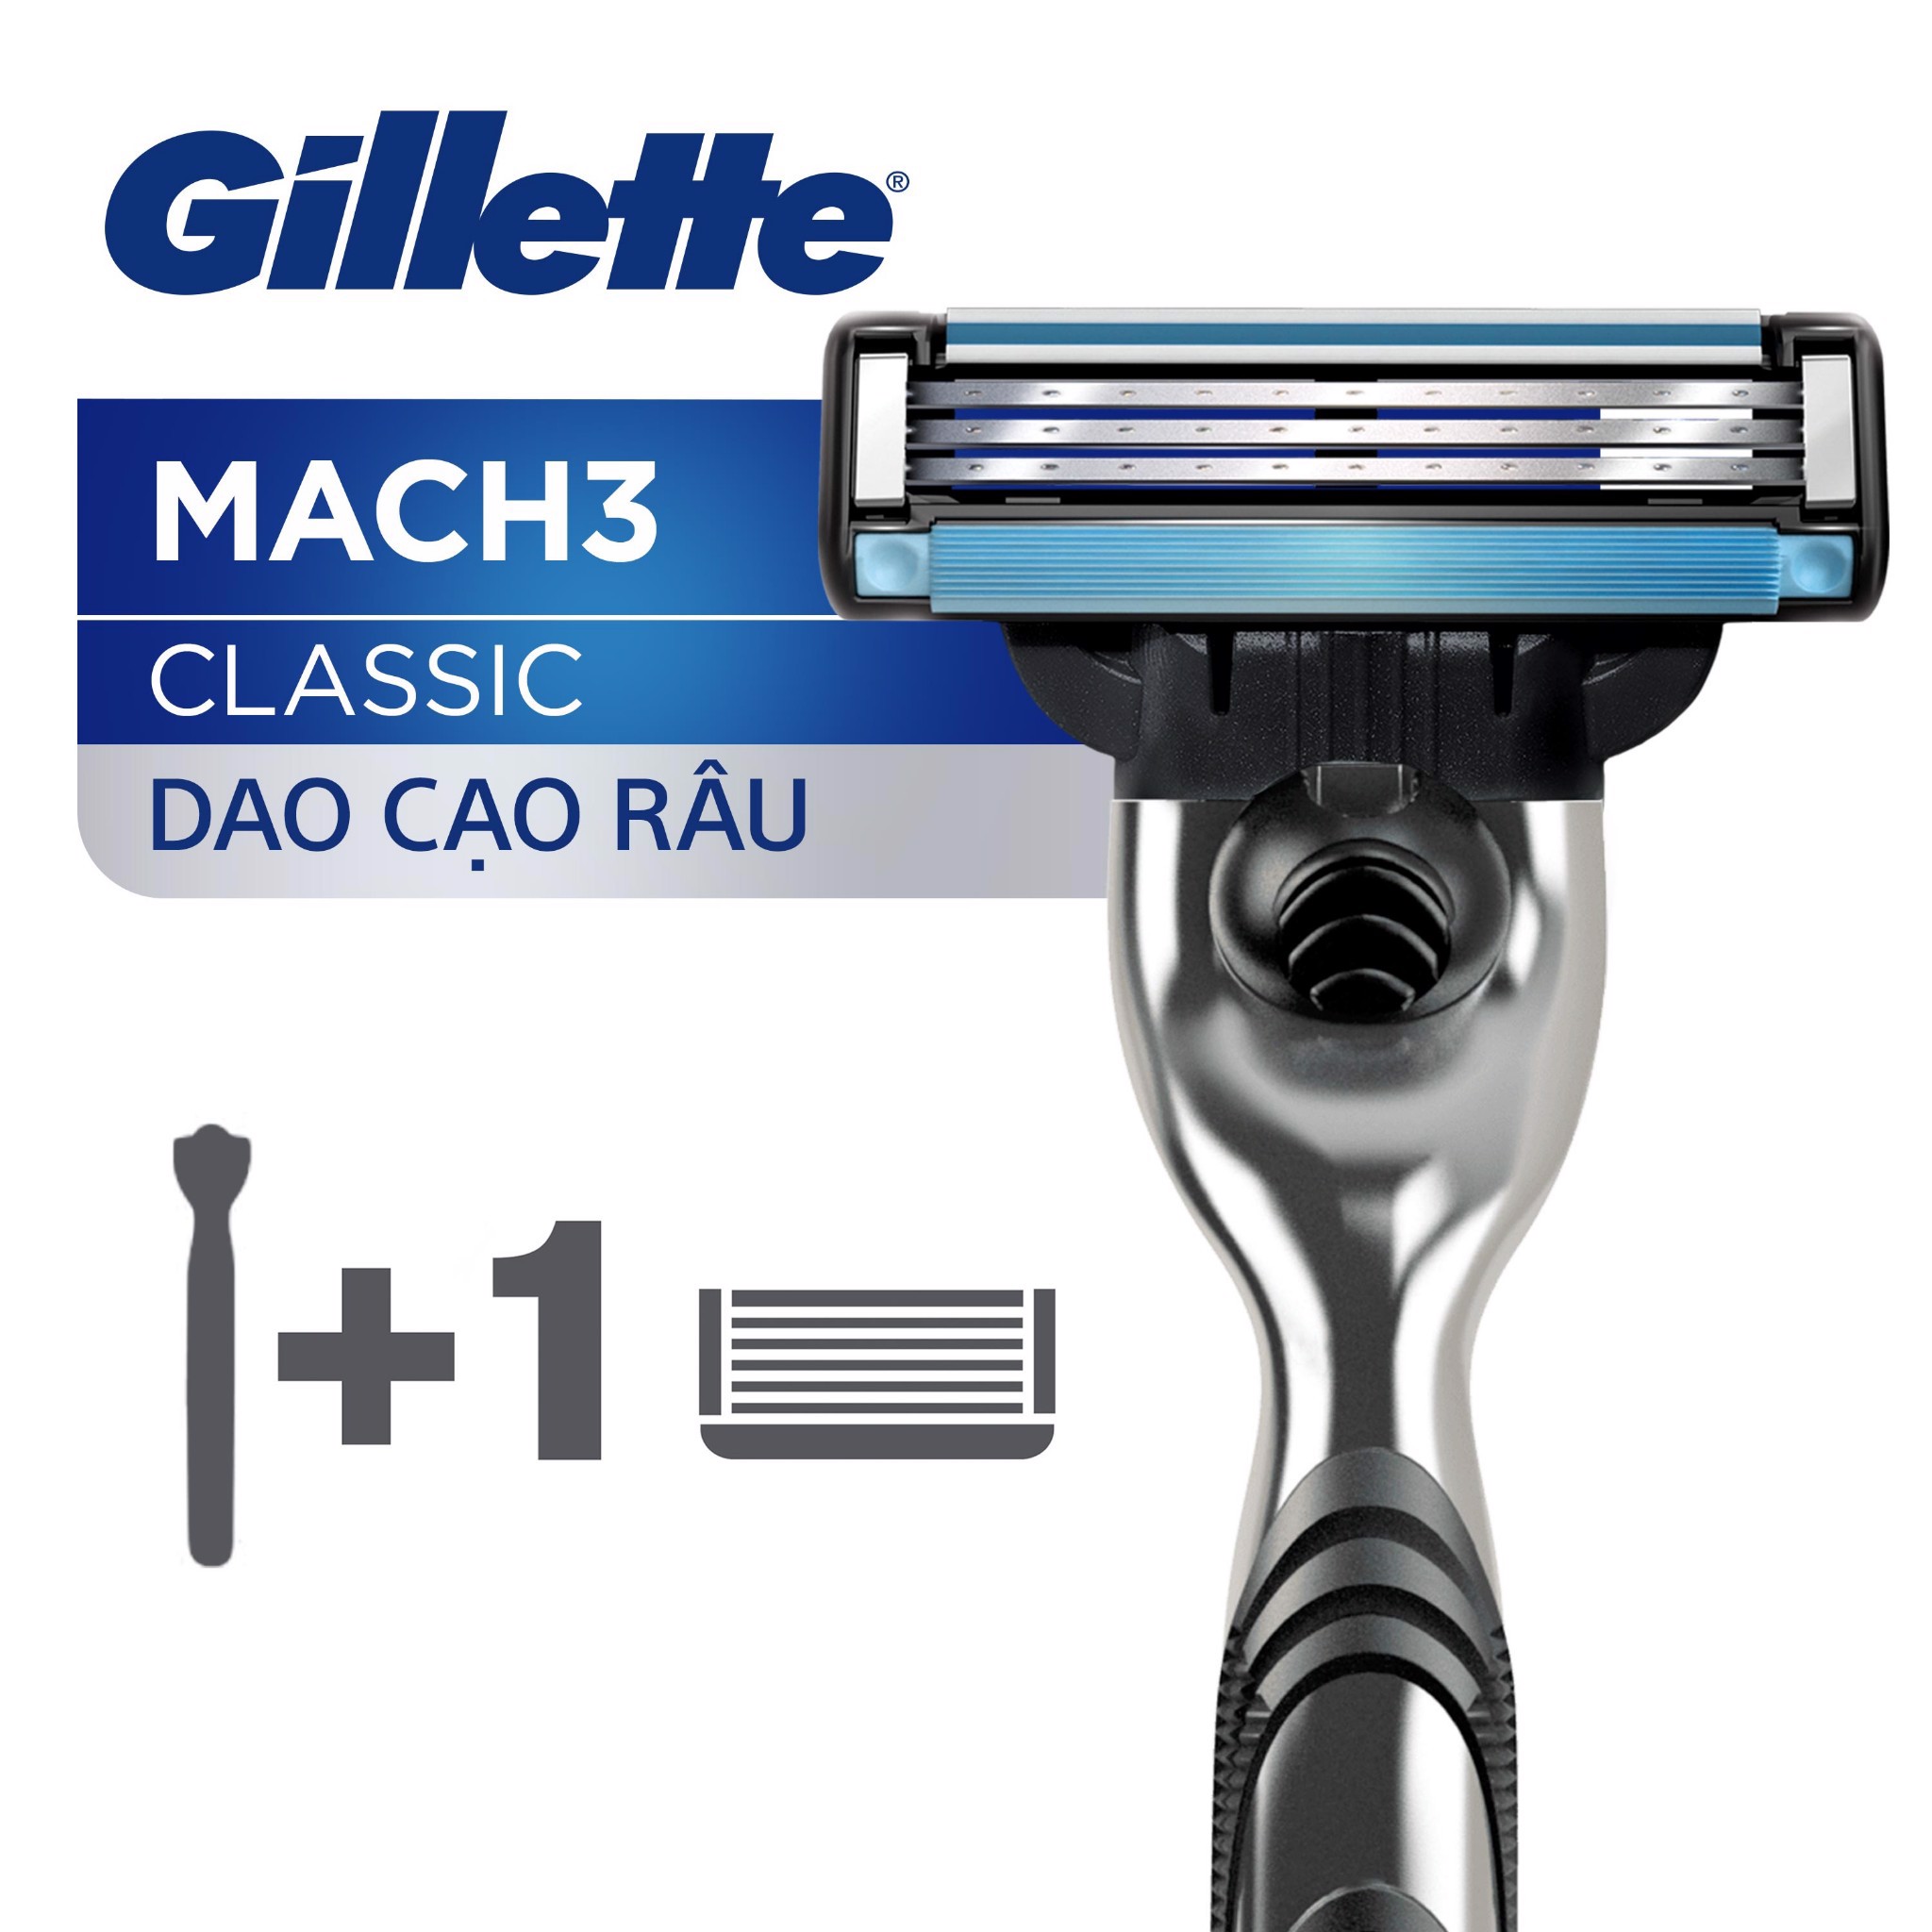 Dao cạo râu Gillette Mach 3 Basic đem lại những đường cạo sát và êm